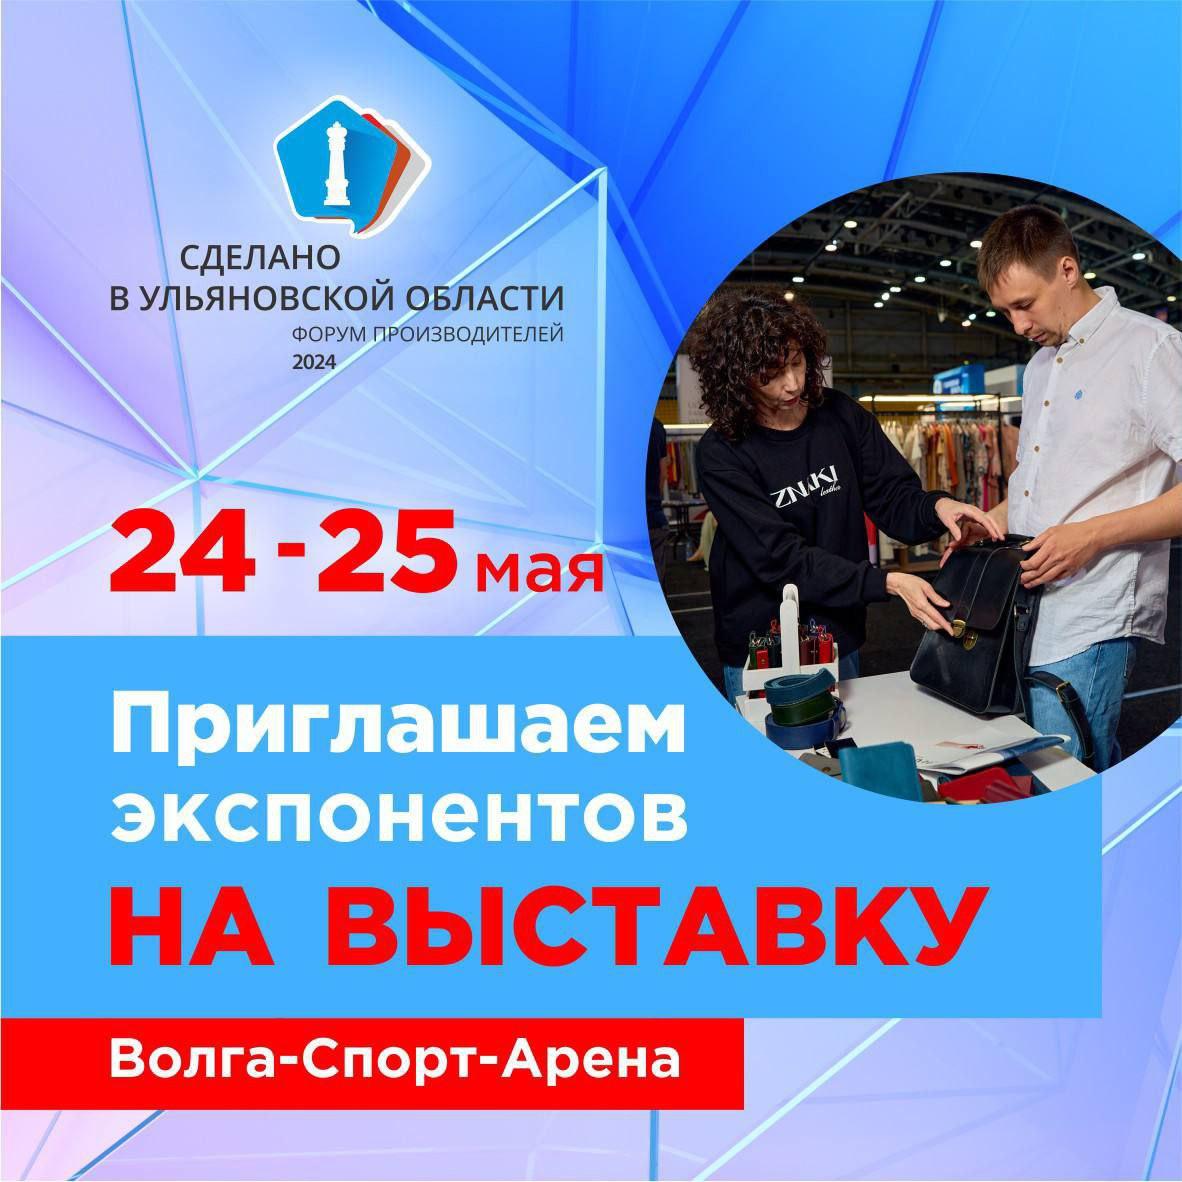 Приглашаем стать участником самой масштабной выставки производителей Ульяновской области.